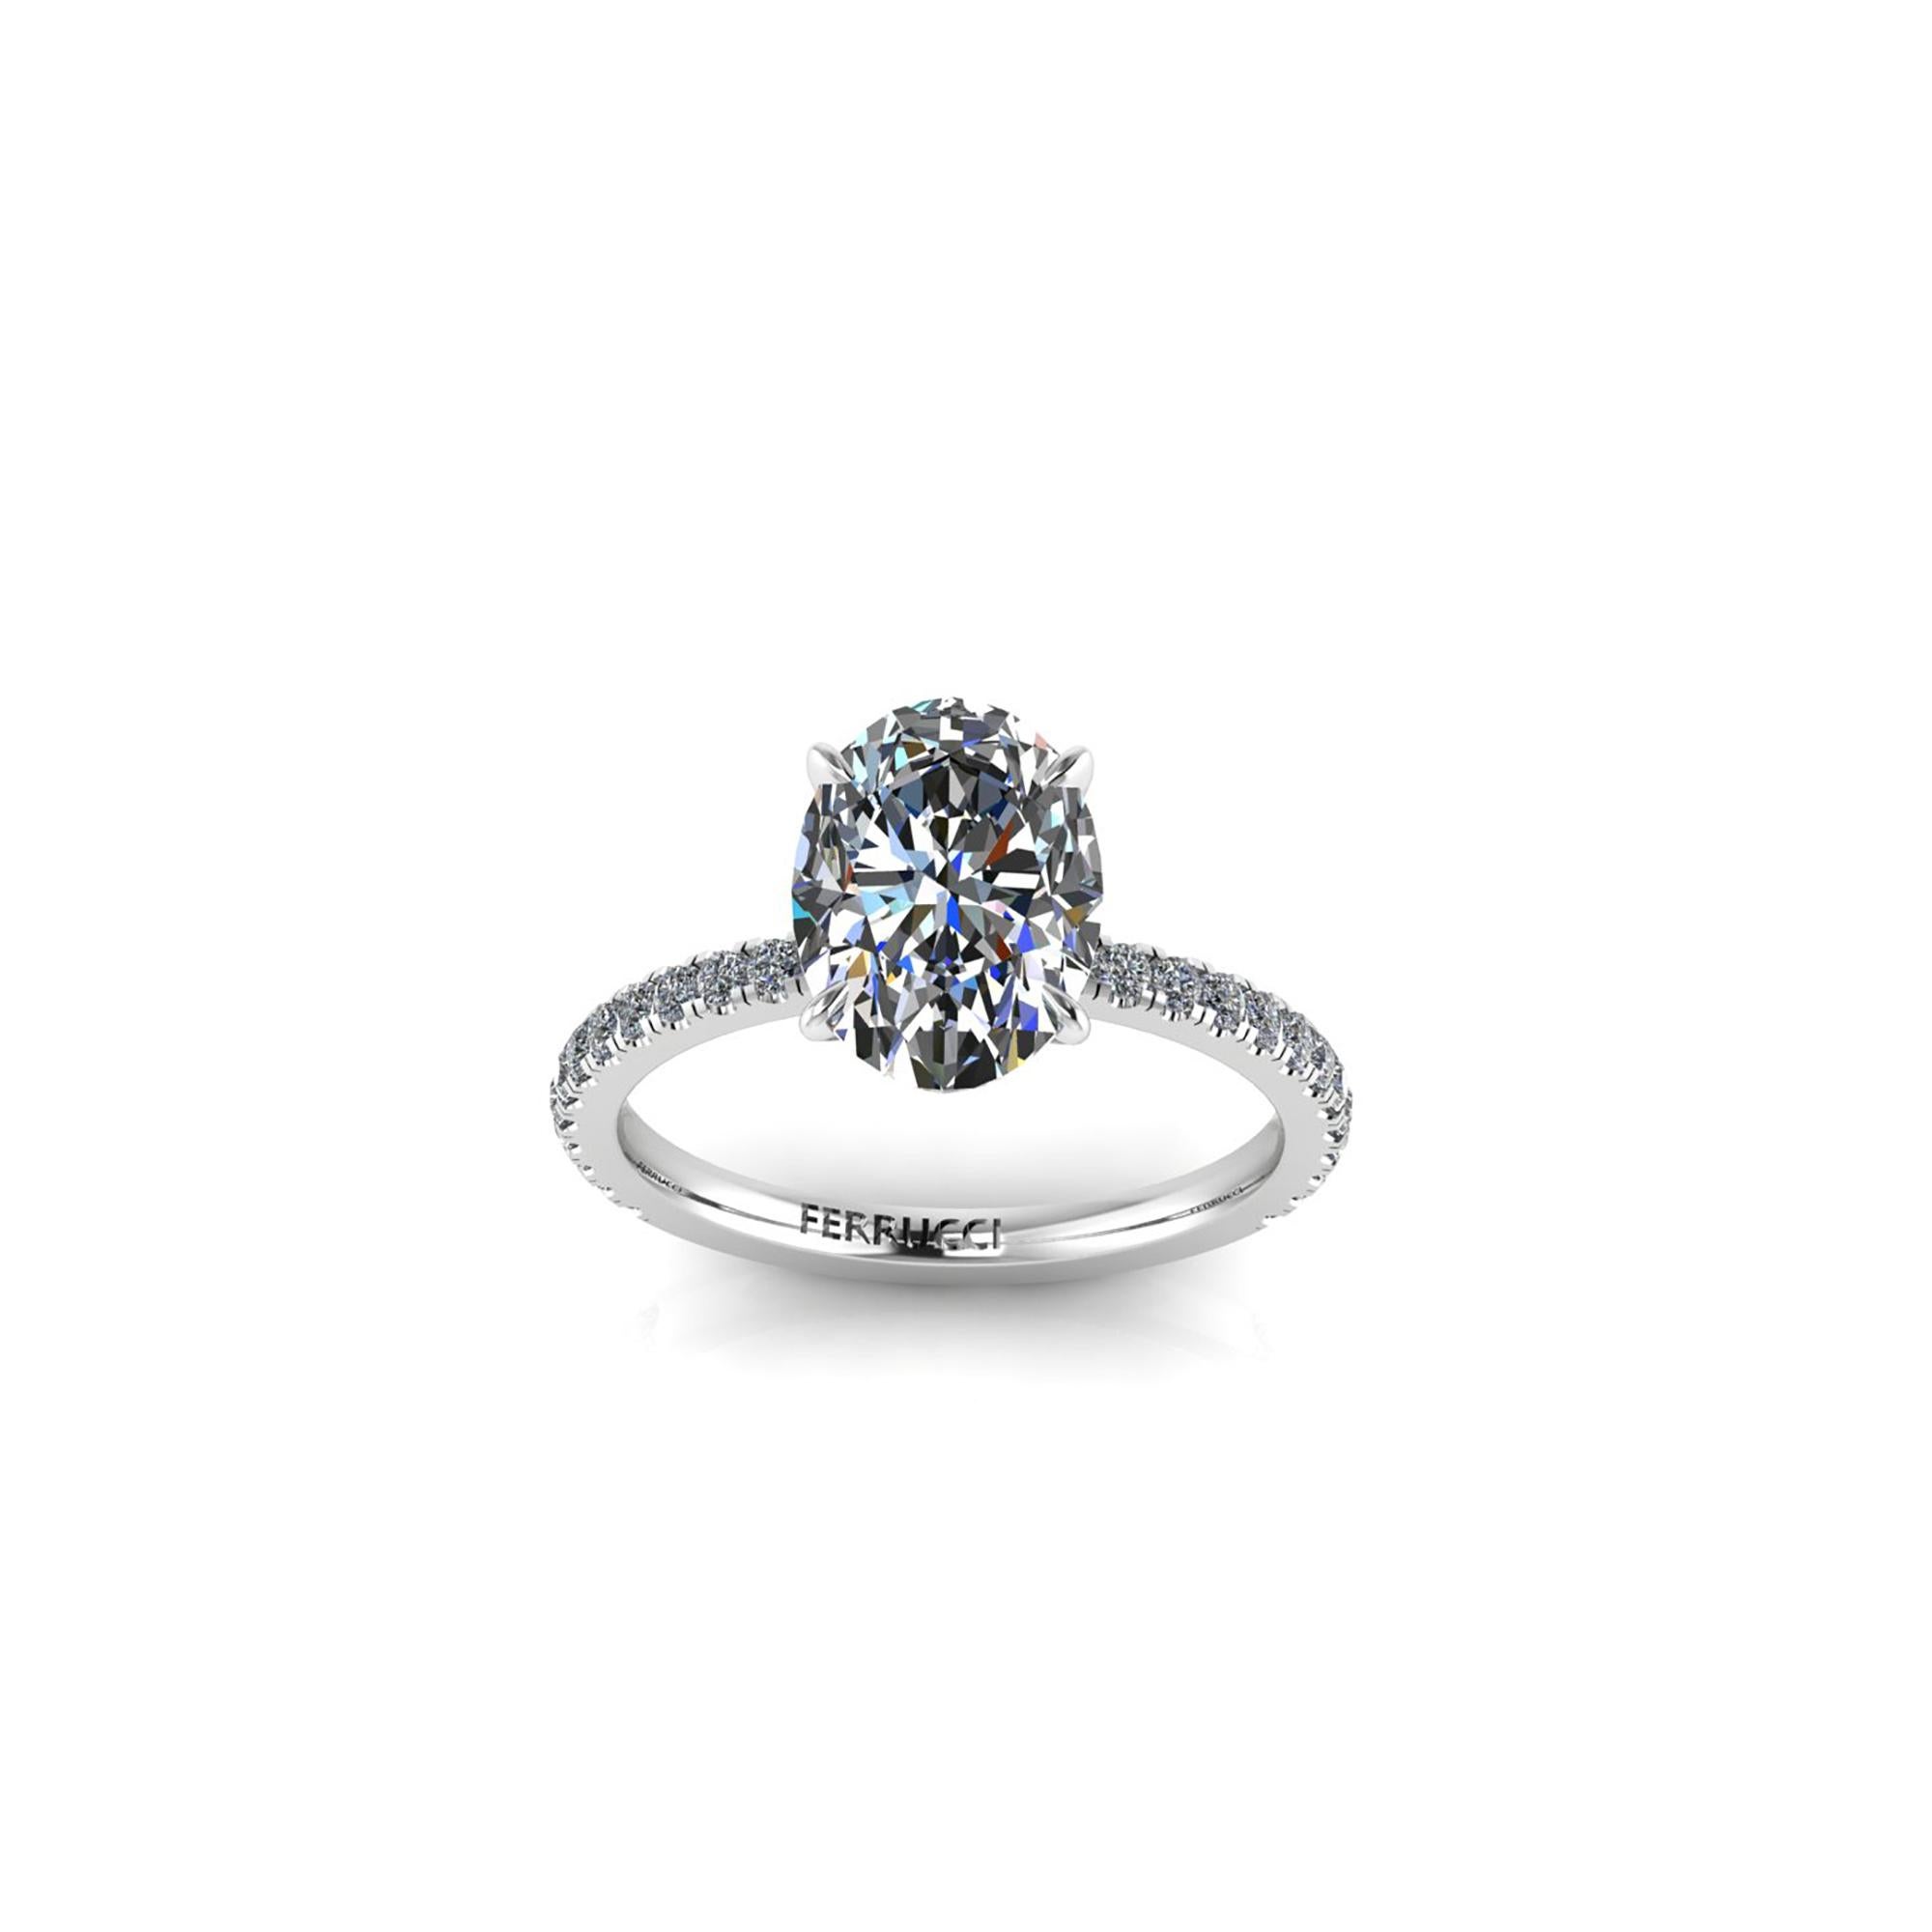 GIA-zertifizierter ovaler Diamant von 2,01 Karat, Farbe G, Reinheit VS1, ein Diamant von höherer Qualität, gefasst in einem Ring aus Platin 950 mit Pave-Diamanten an den Schultern des Schafts, die das Band verschönern.  Mittelstein mit einem